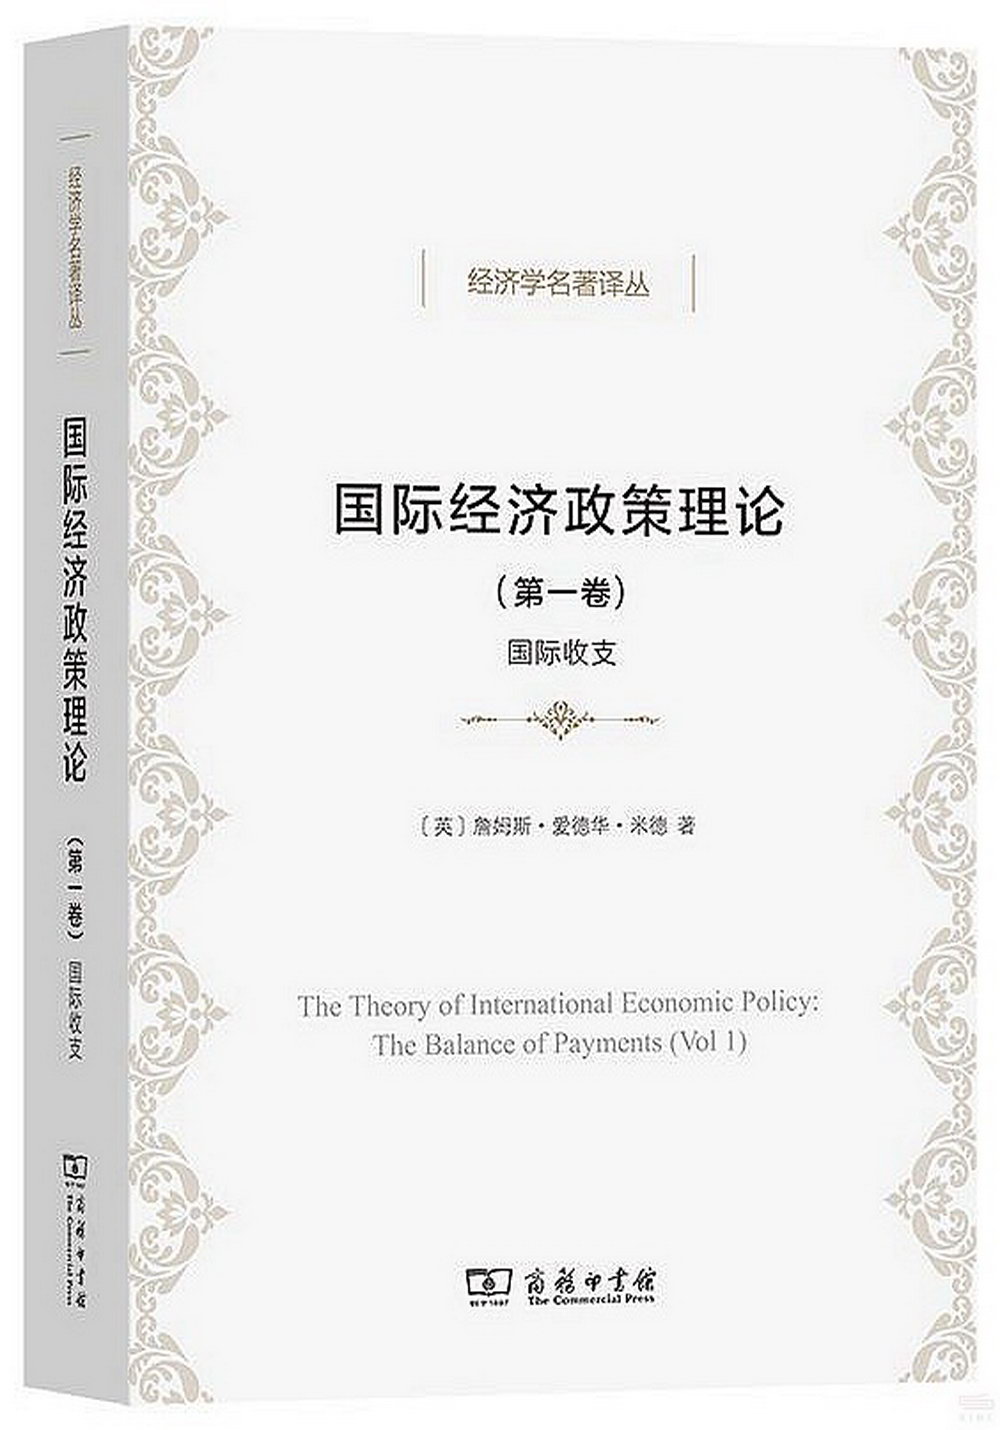 國際經濟政策理論（第一卷）：國際收支